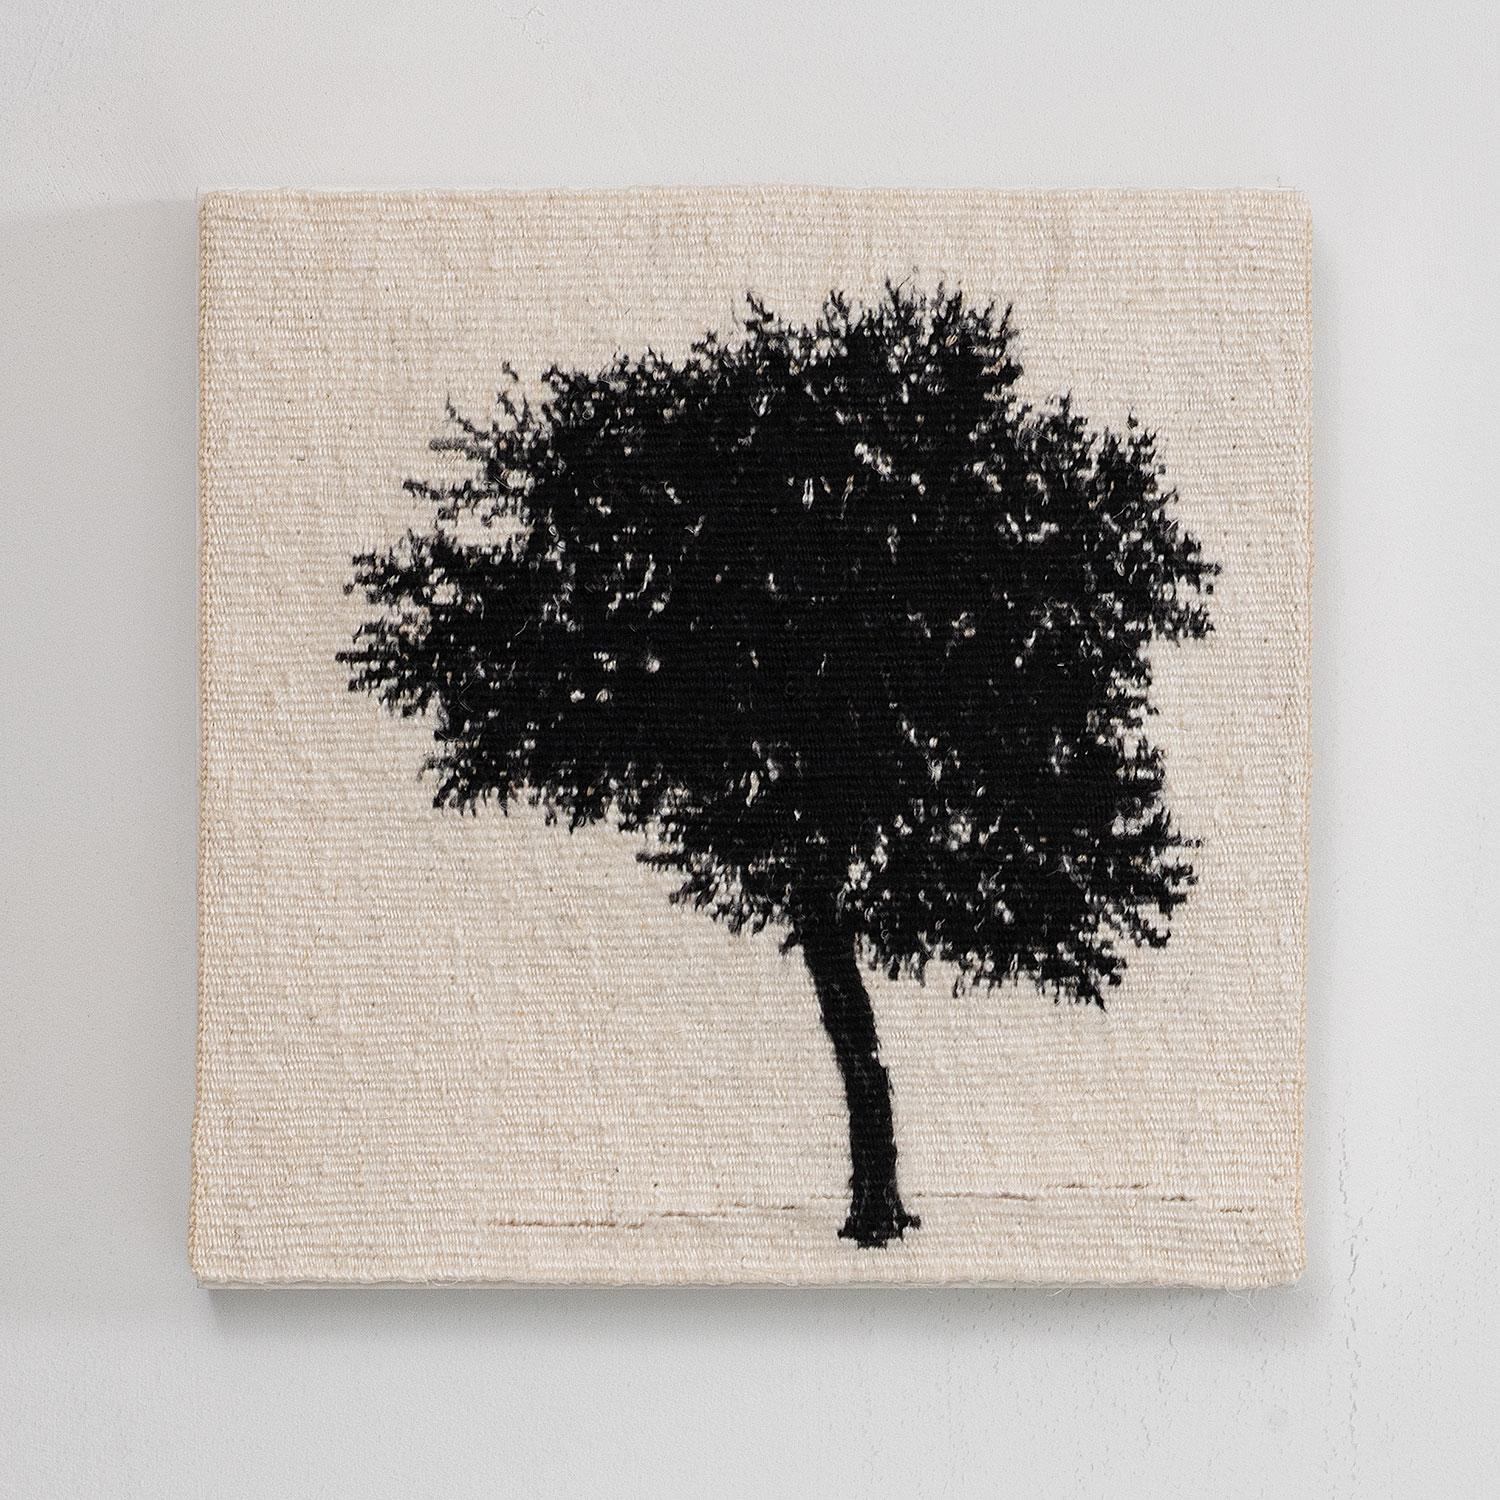 Journey Trees III, Leinen und Schwingfäden, 8" x 8" x 1", 2021.

Diese figurative gewebte Textilarbeit stammt von der britischen Textilkünstlerin Sara Brennan (geb. 1963, Edinburgh, Schottland). Sie sagt: "Journey Trees ist eine Serie von